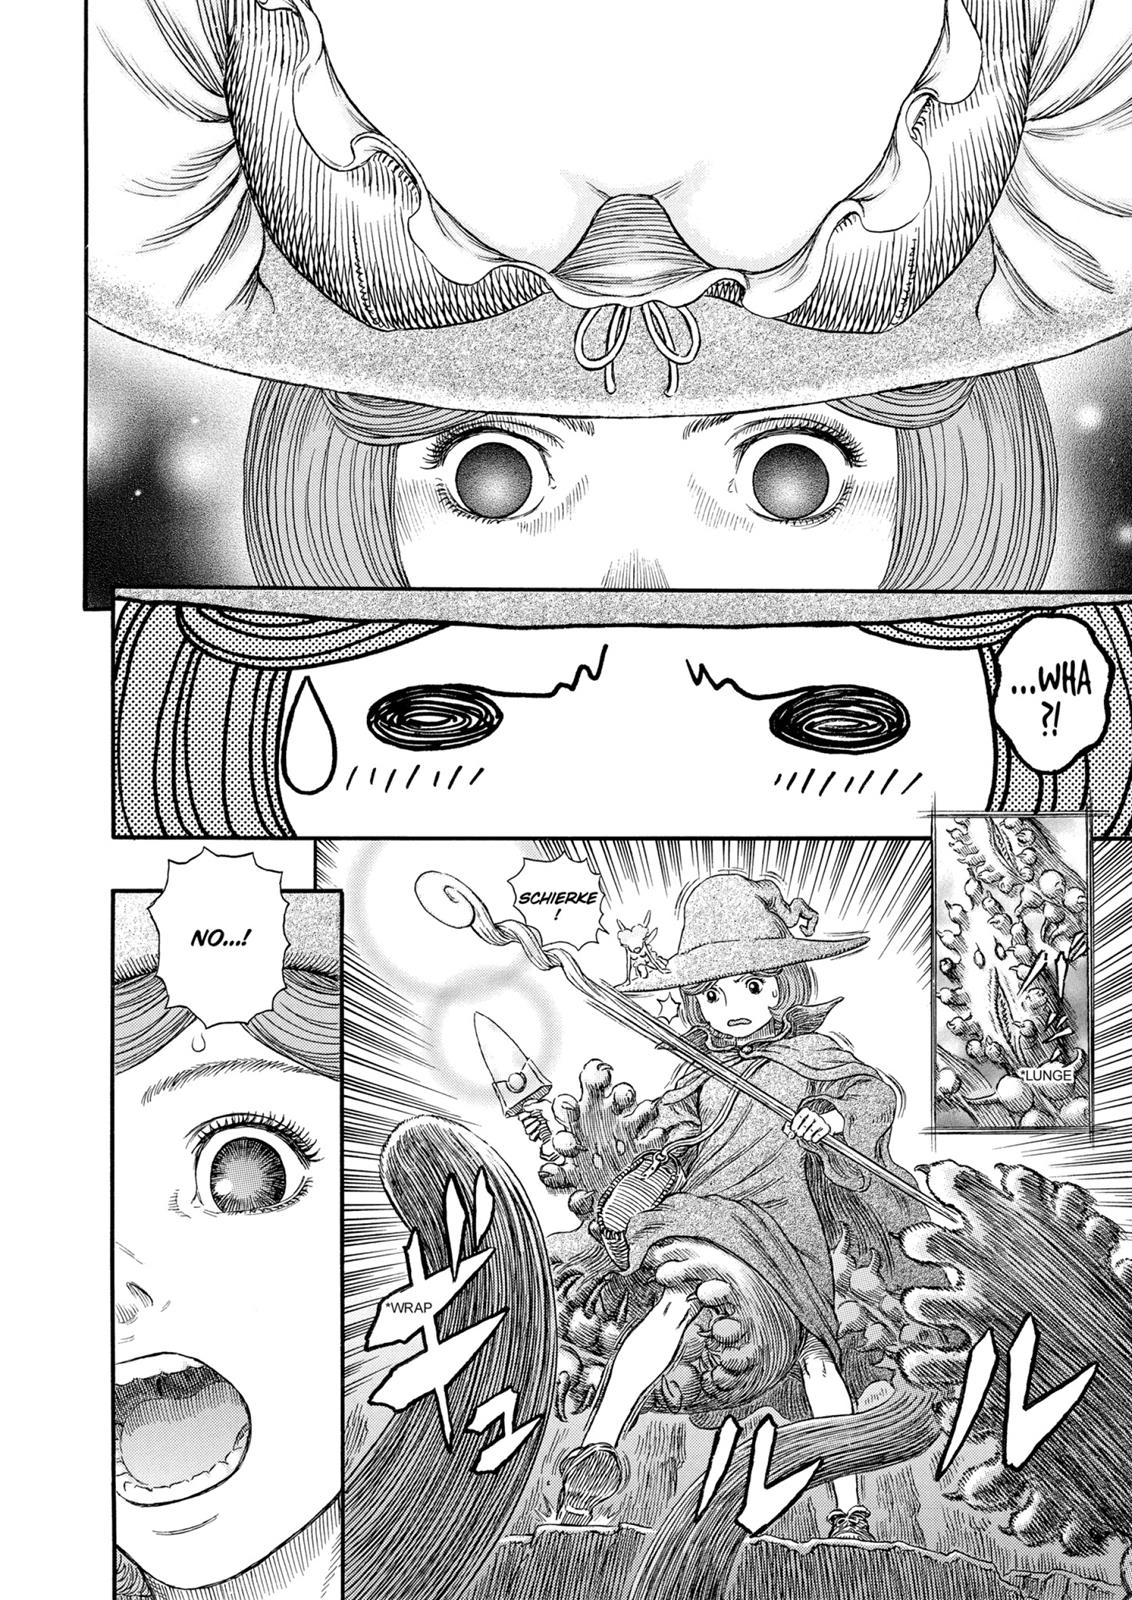 Berserk Manga Chapter 312 image 17